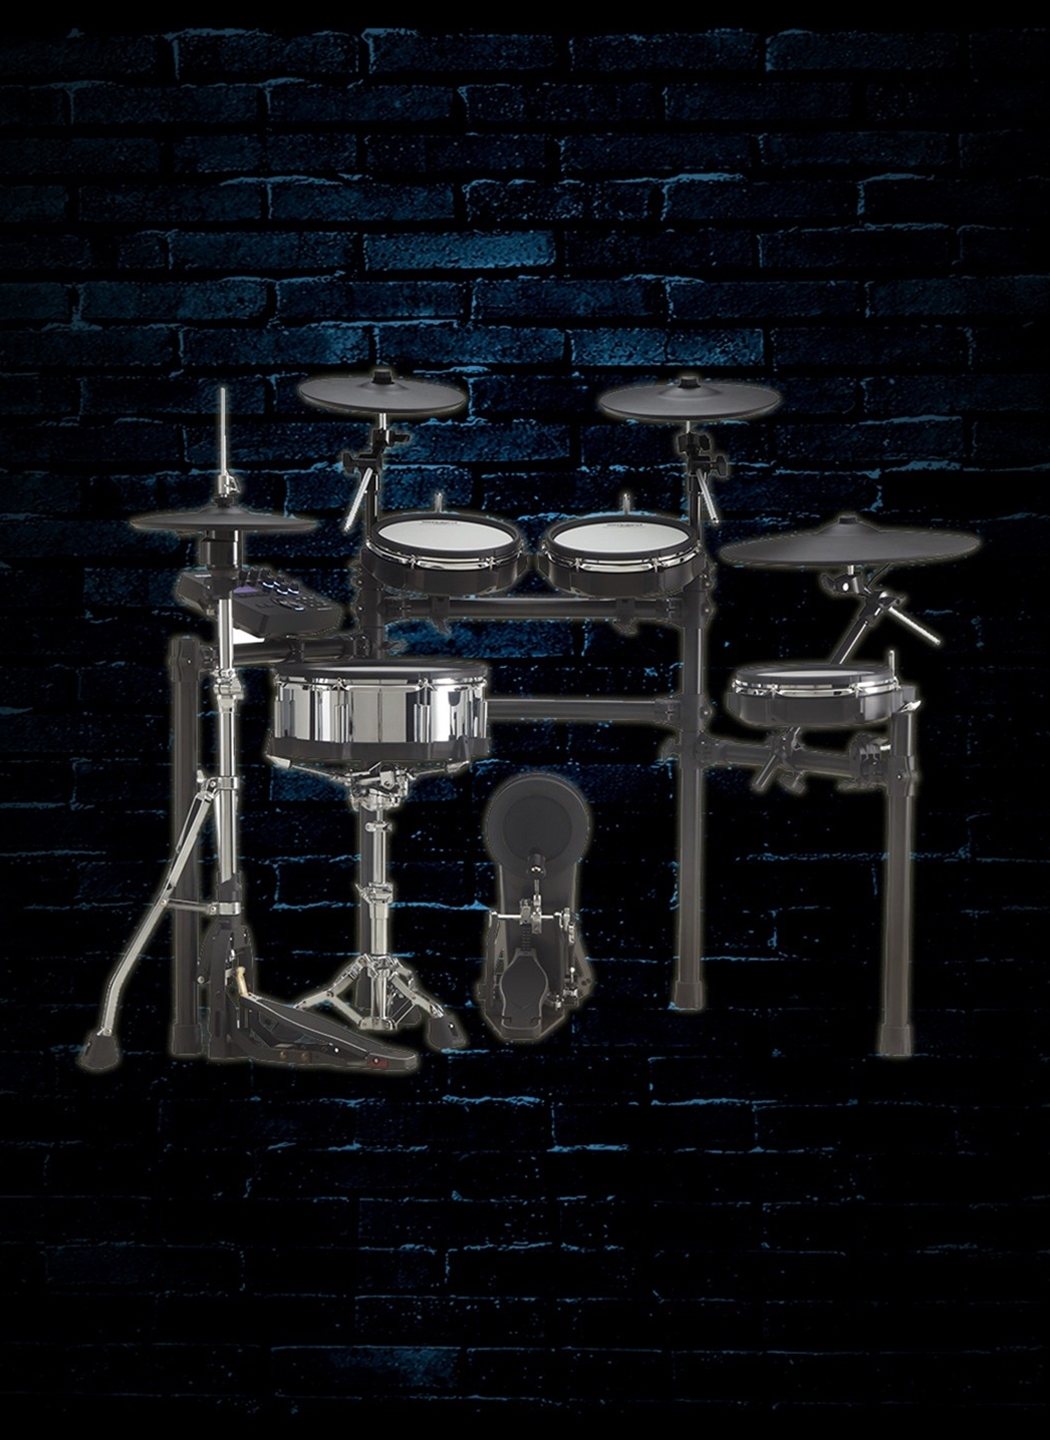 Roland TD-27KV V-Drums 9-Pad Electronic Drum Set